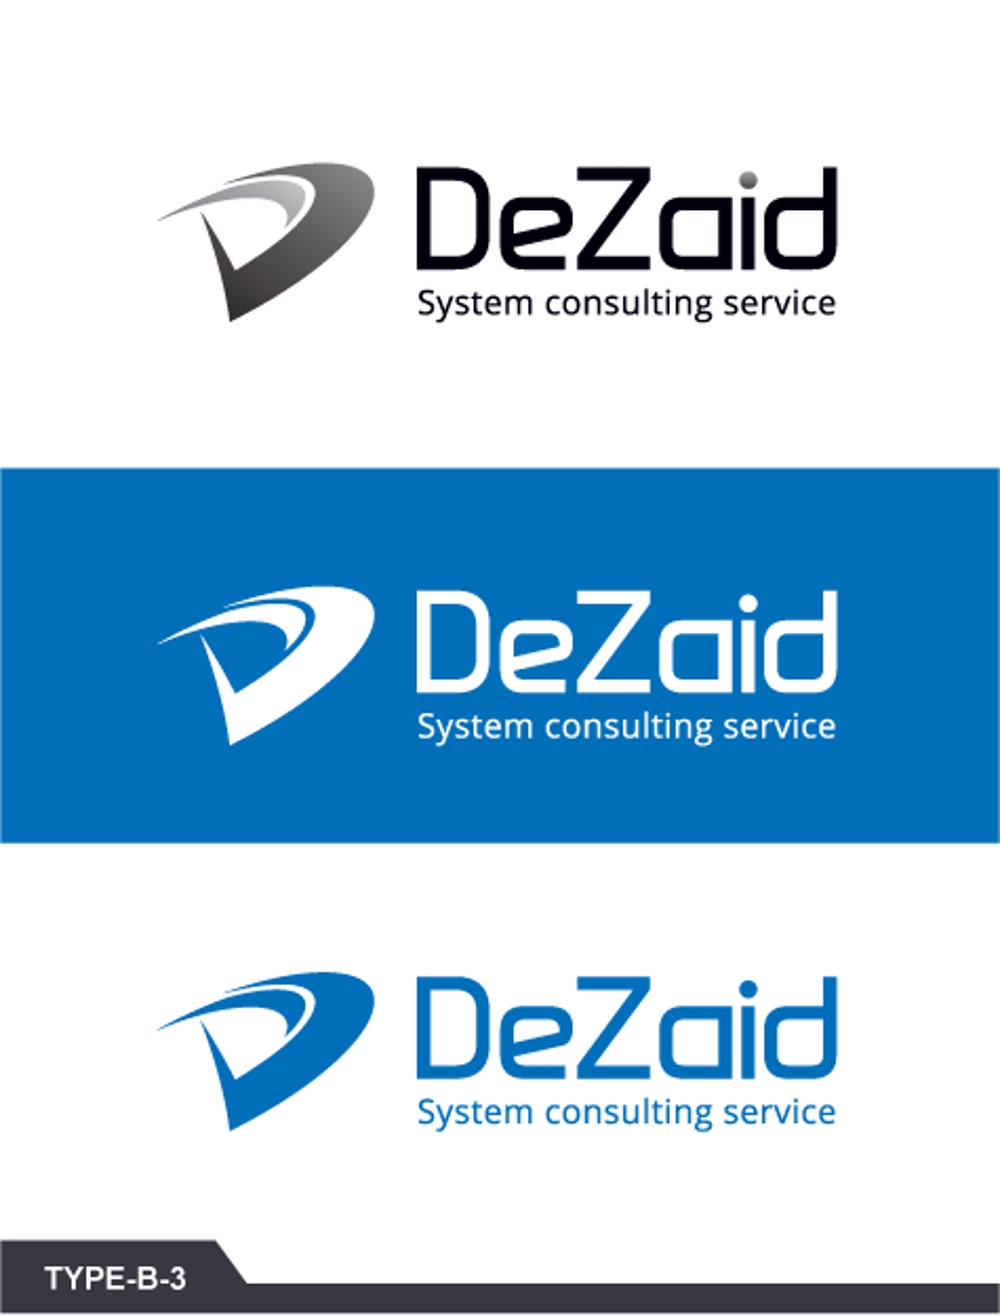 システムコンサルティングサービスを行う企業のロゴ